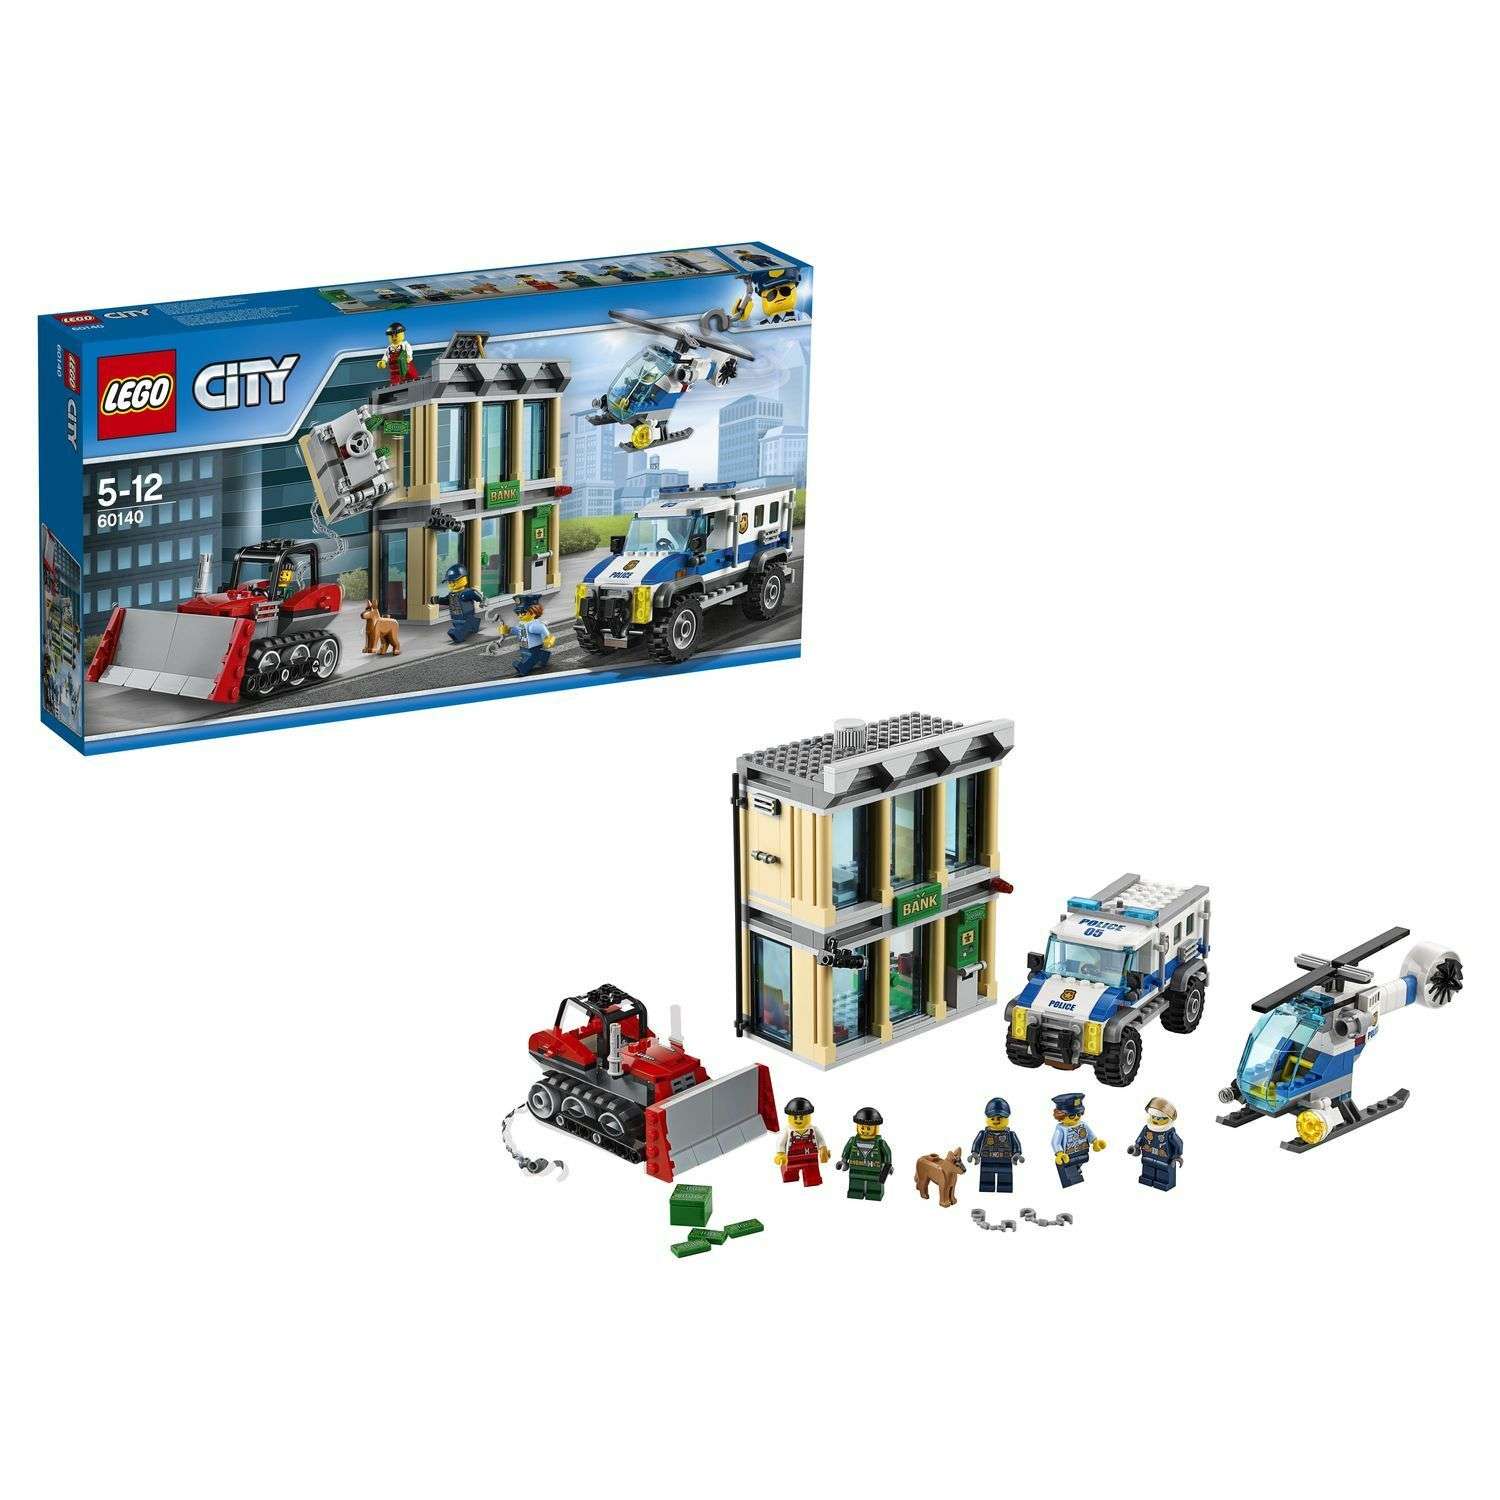 Конструктор LEGO City Police Ограбление на бульдозере (60140) - фото 1